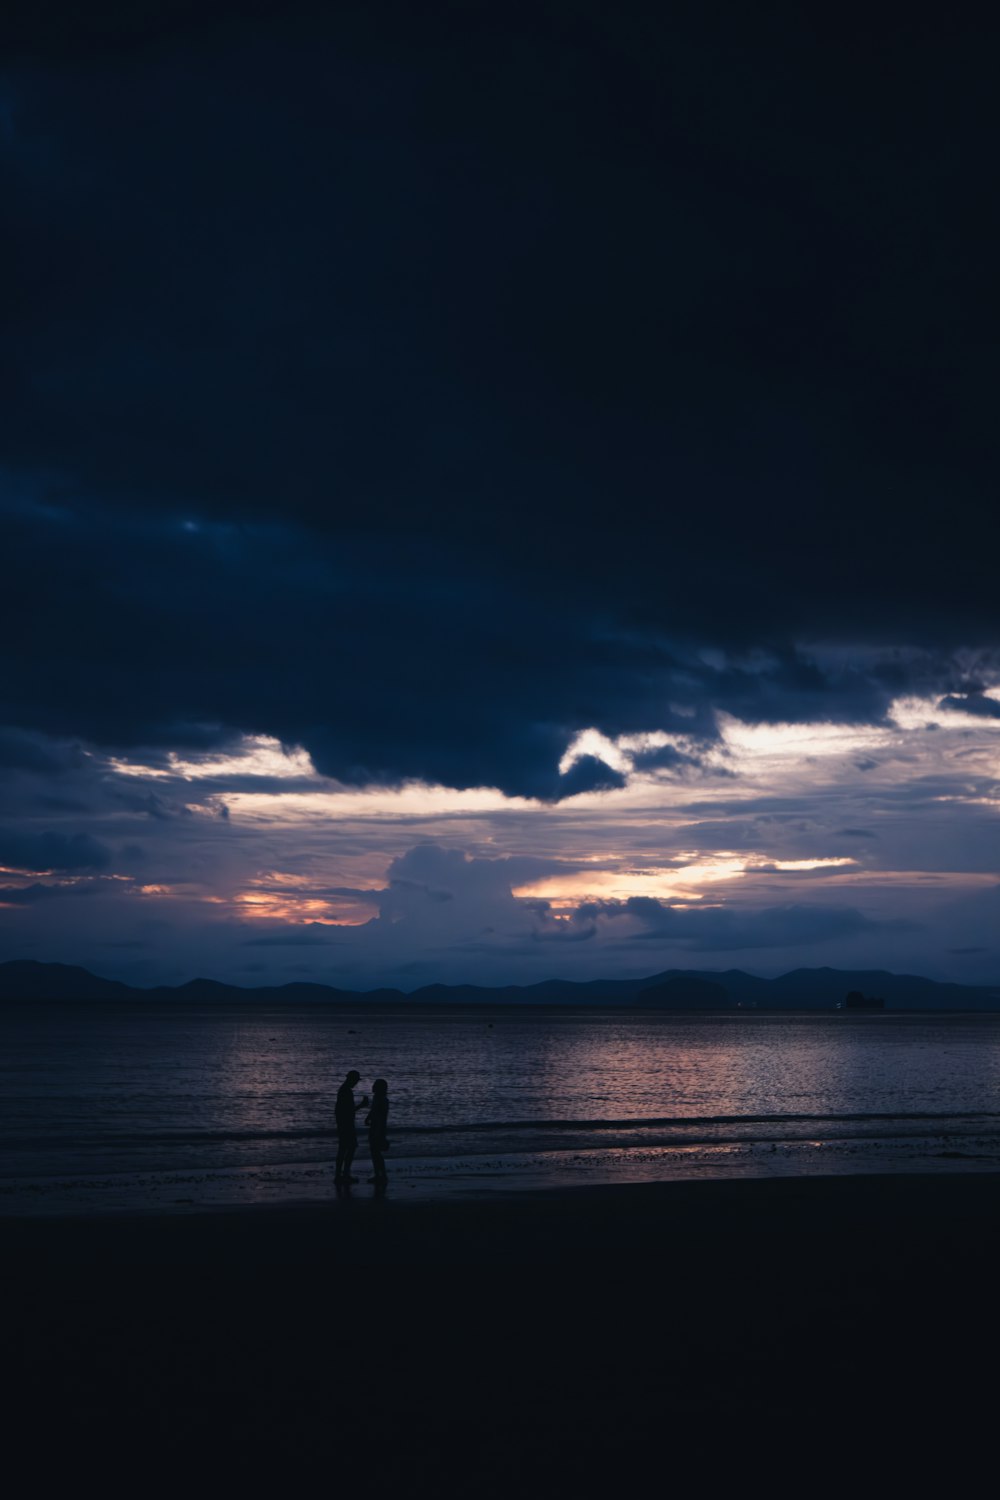 zwei menschen, die am strand unter einem bewölkten himmel stehen